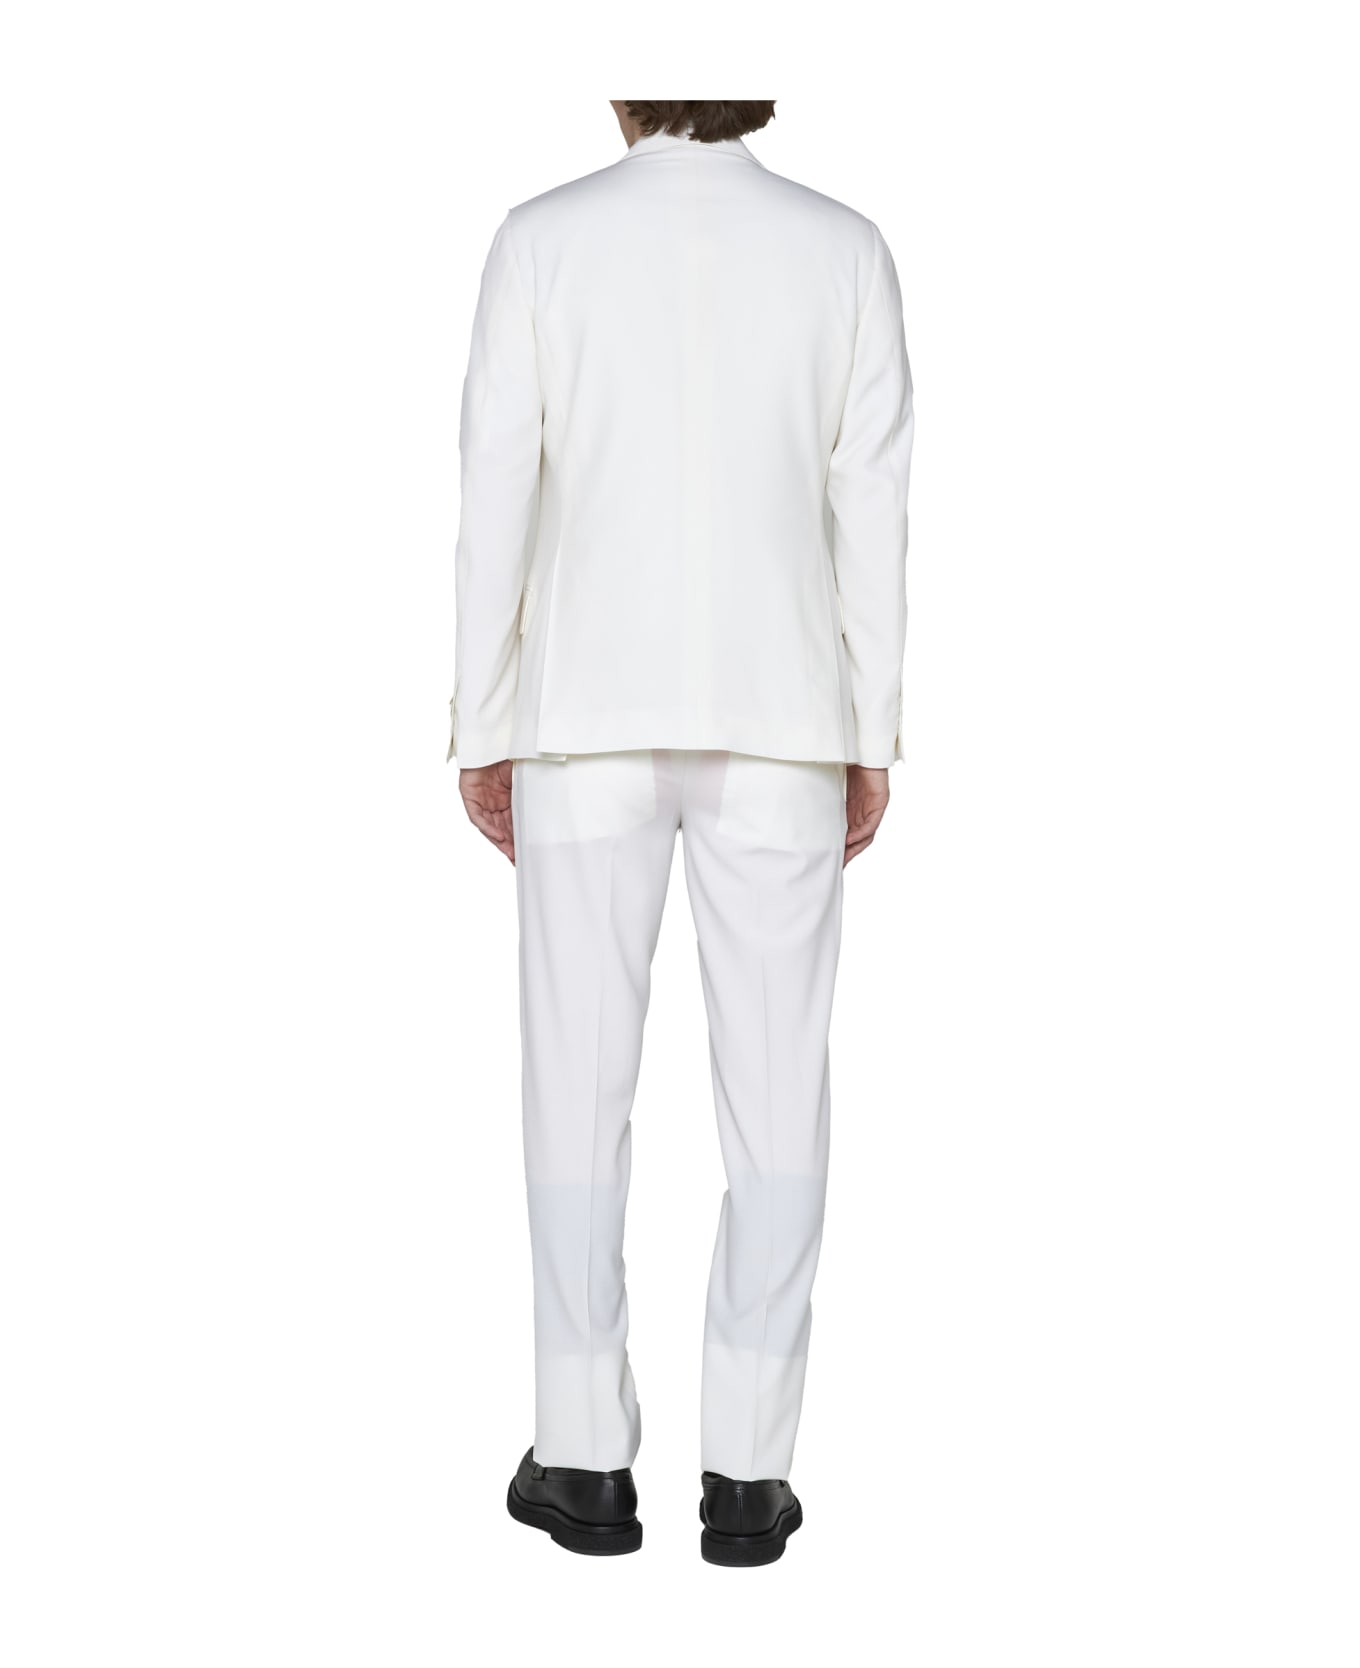 Lardini Suit - White